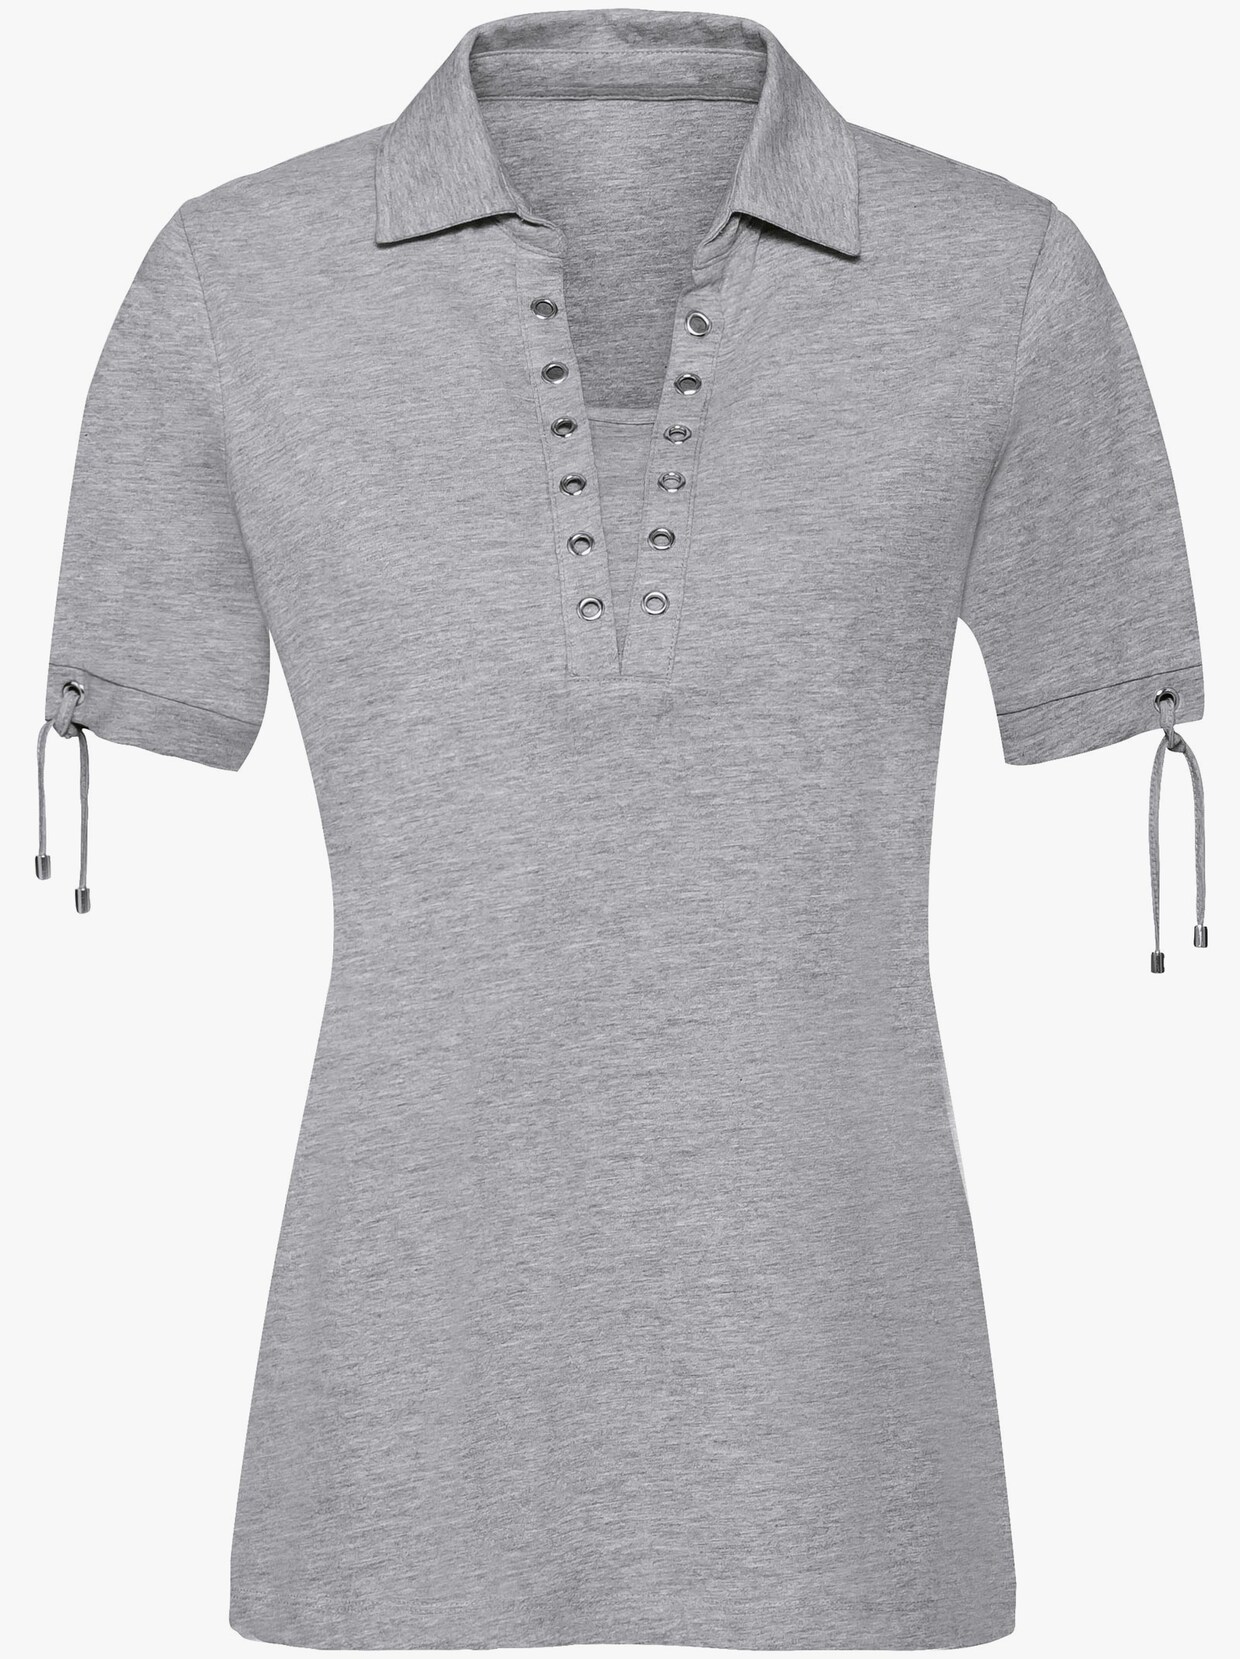 Tričko s krátkým rukávem - šedá-melír